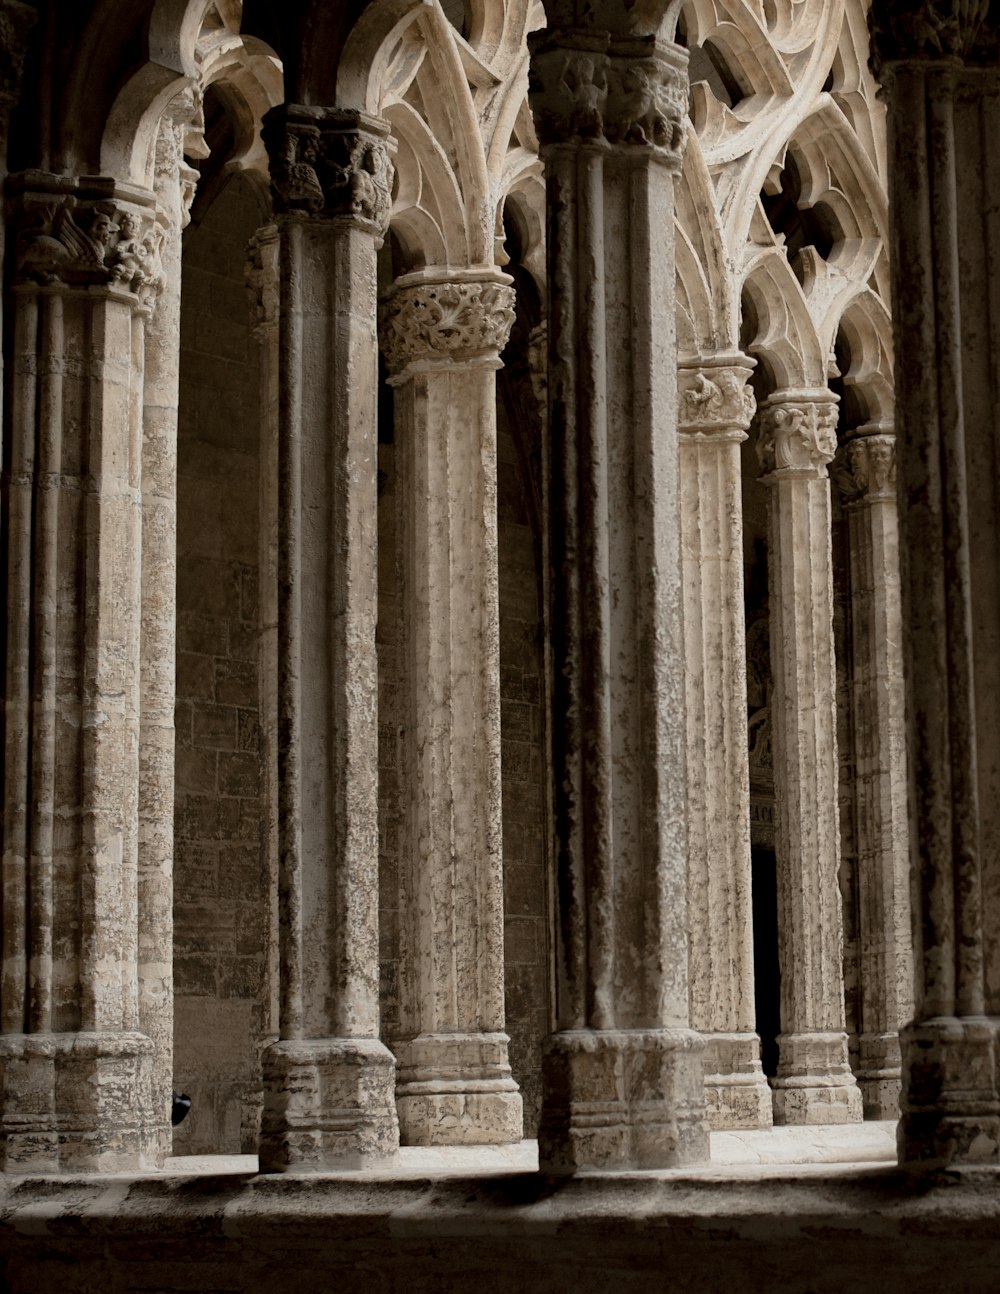 Una foto en blanco y negro de pilares y arcos